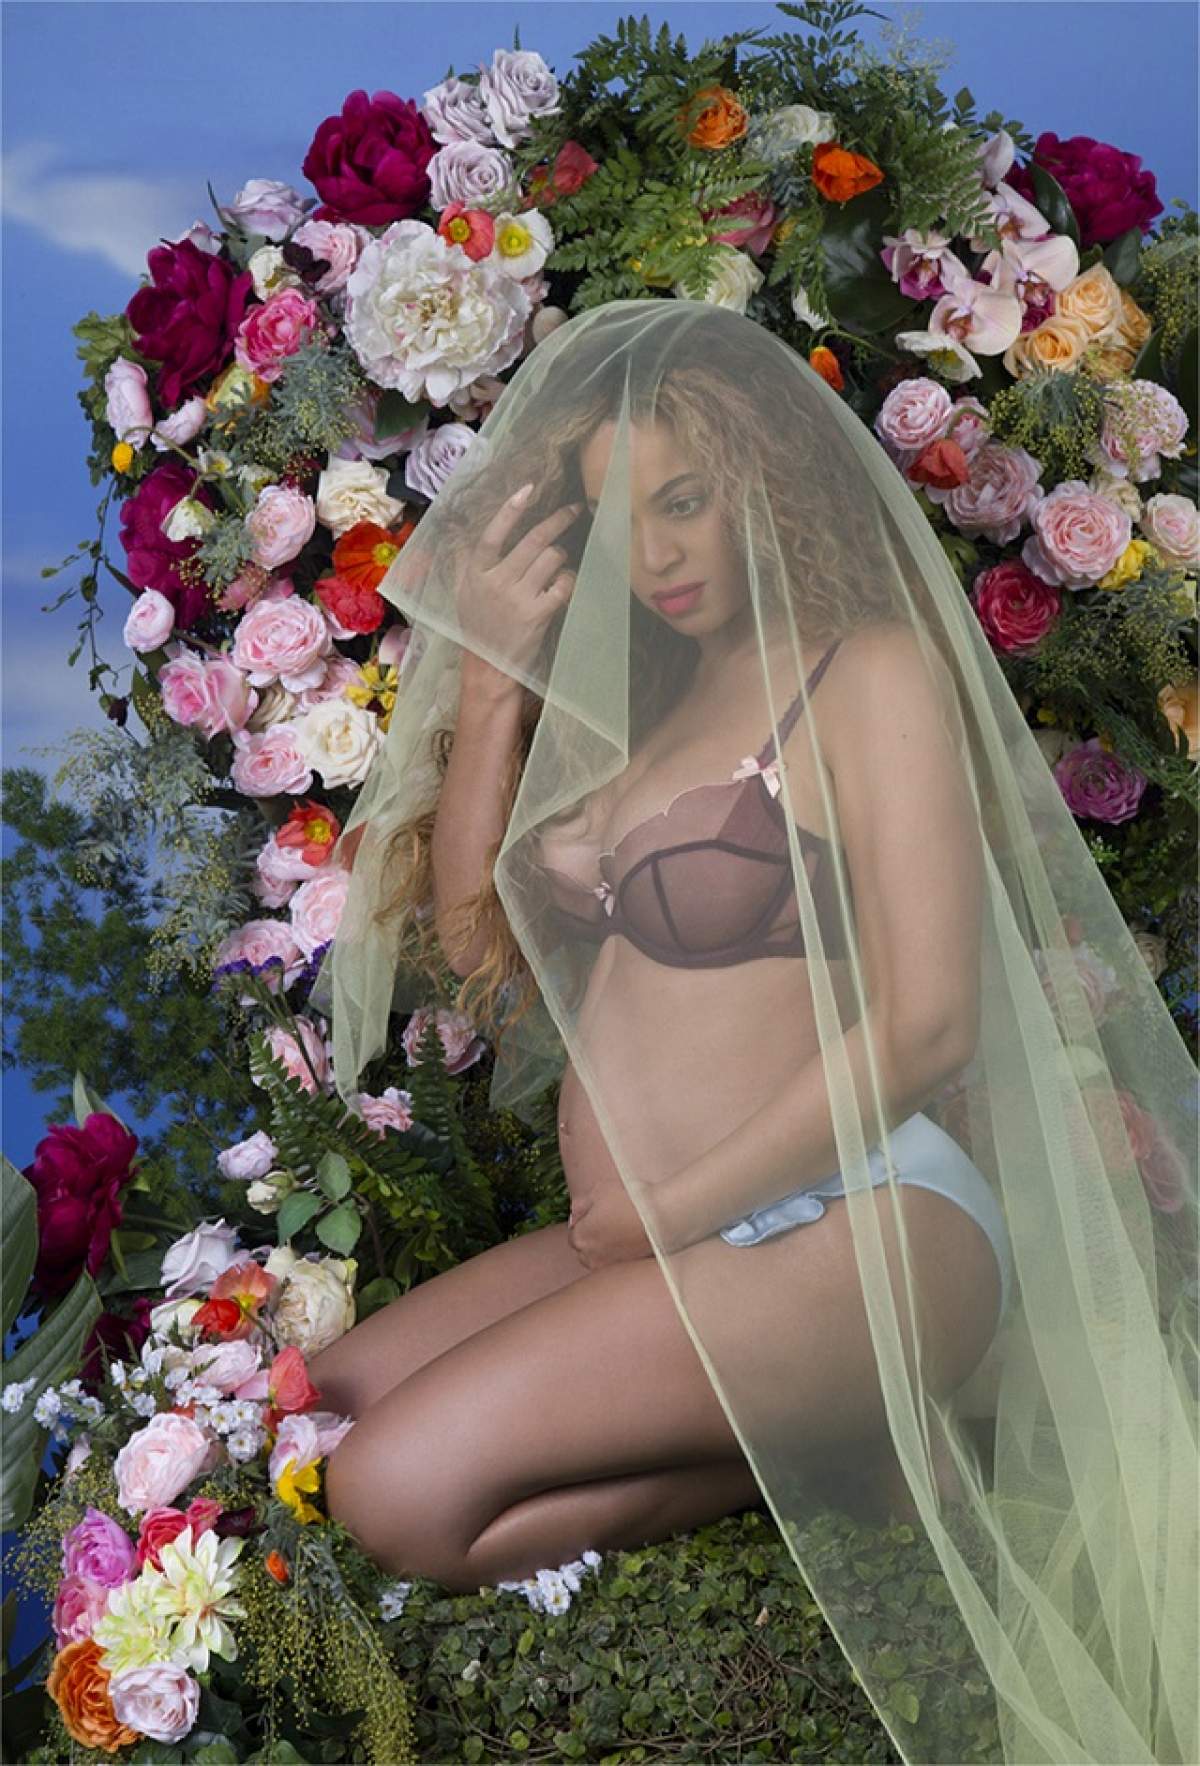 FOTO / Beyonce s-a dezbrăcat complet în fața camerei! Cântăreața arată demențial, deși e însărcinată cu gemeni